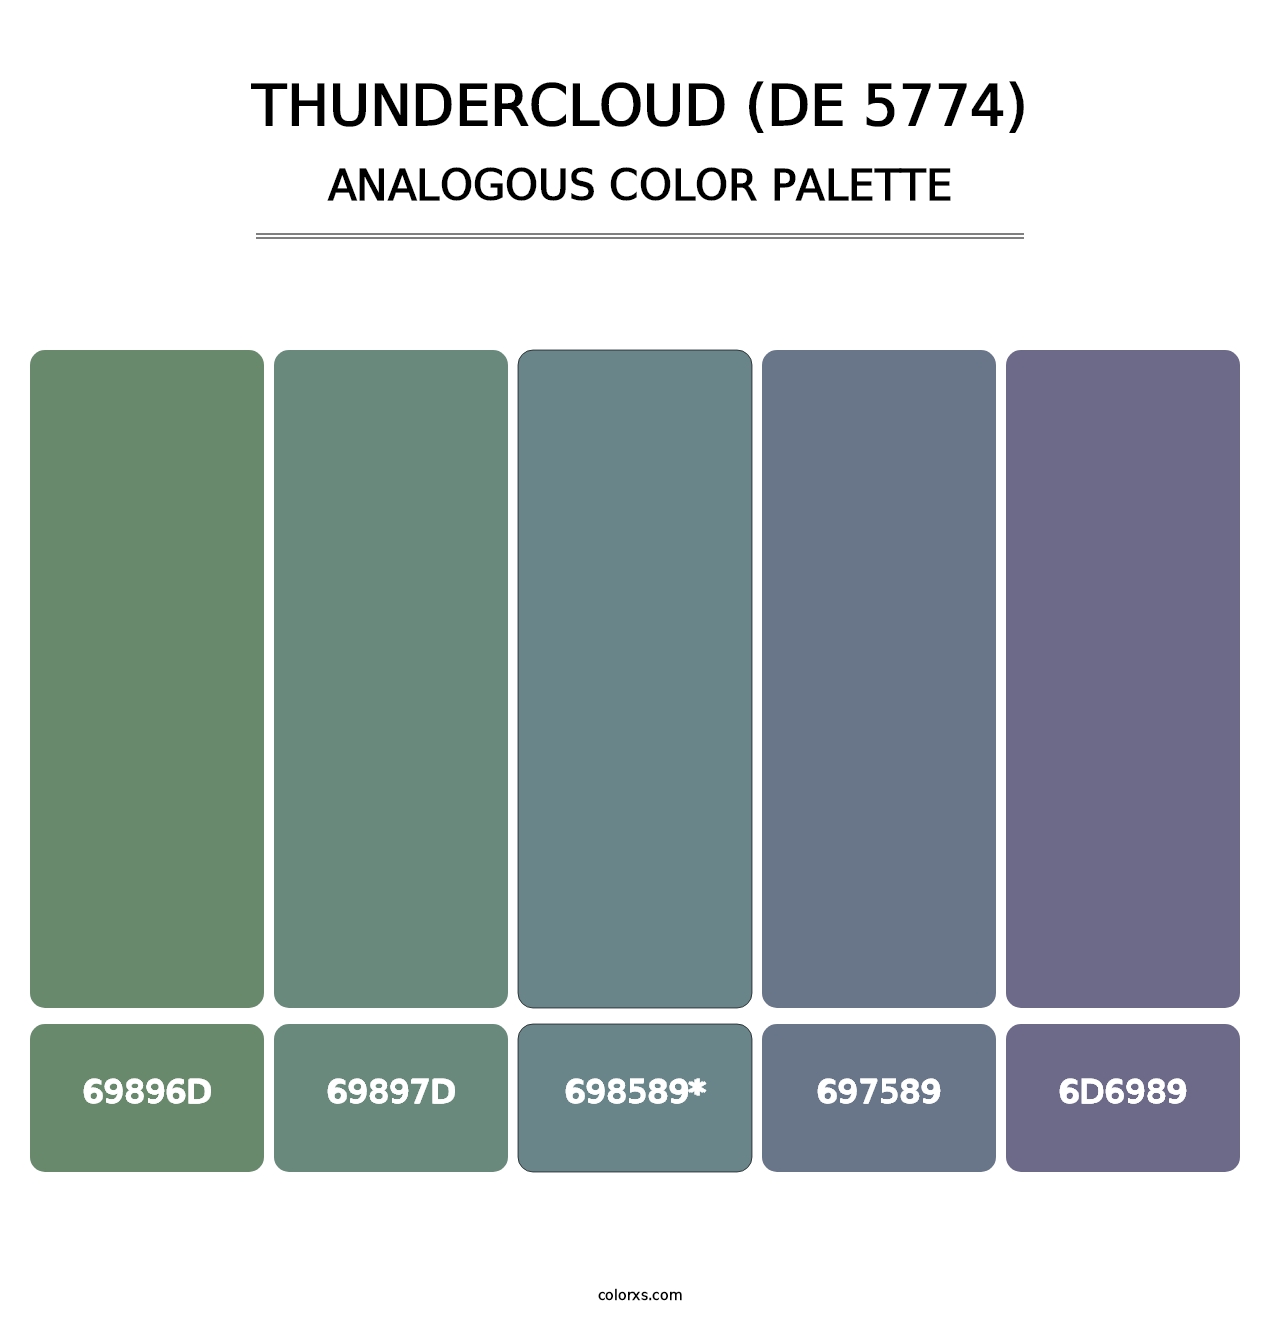 Thundercloud (DE 5774) - Analogous Color Palette